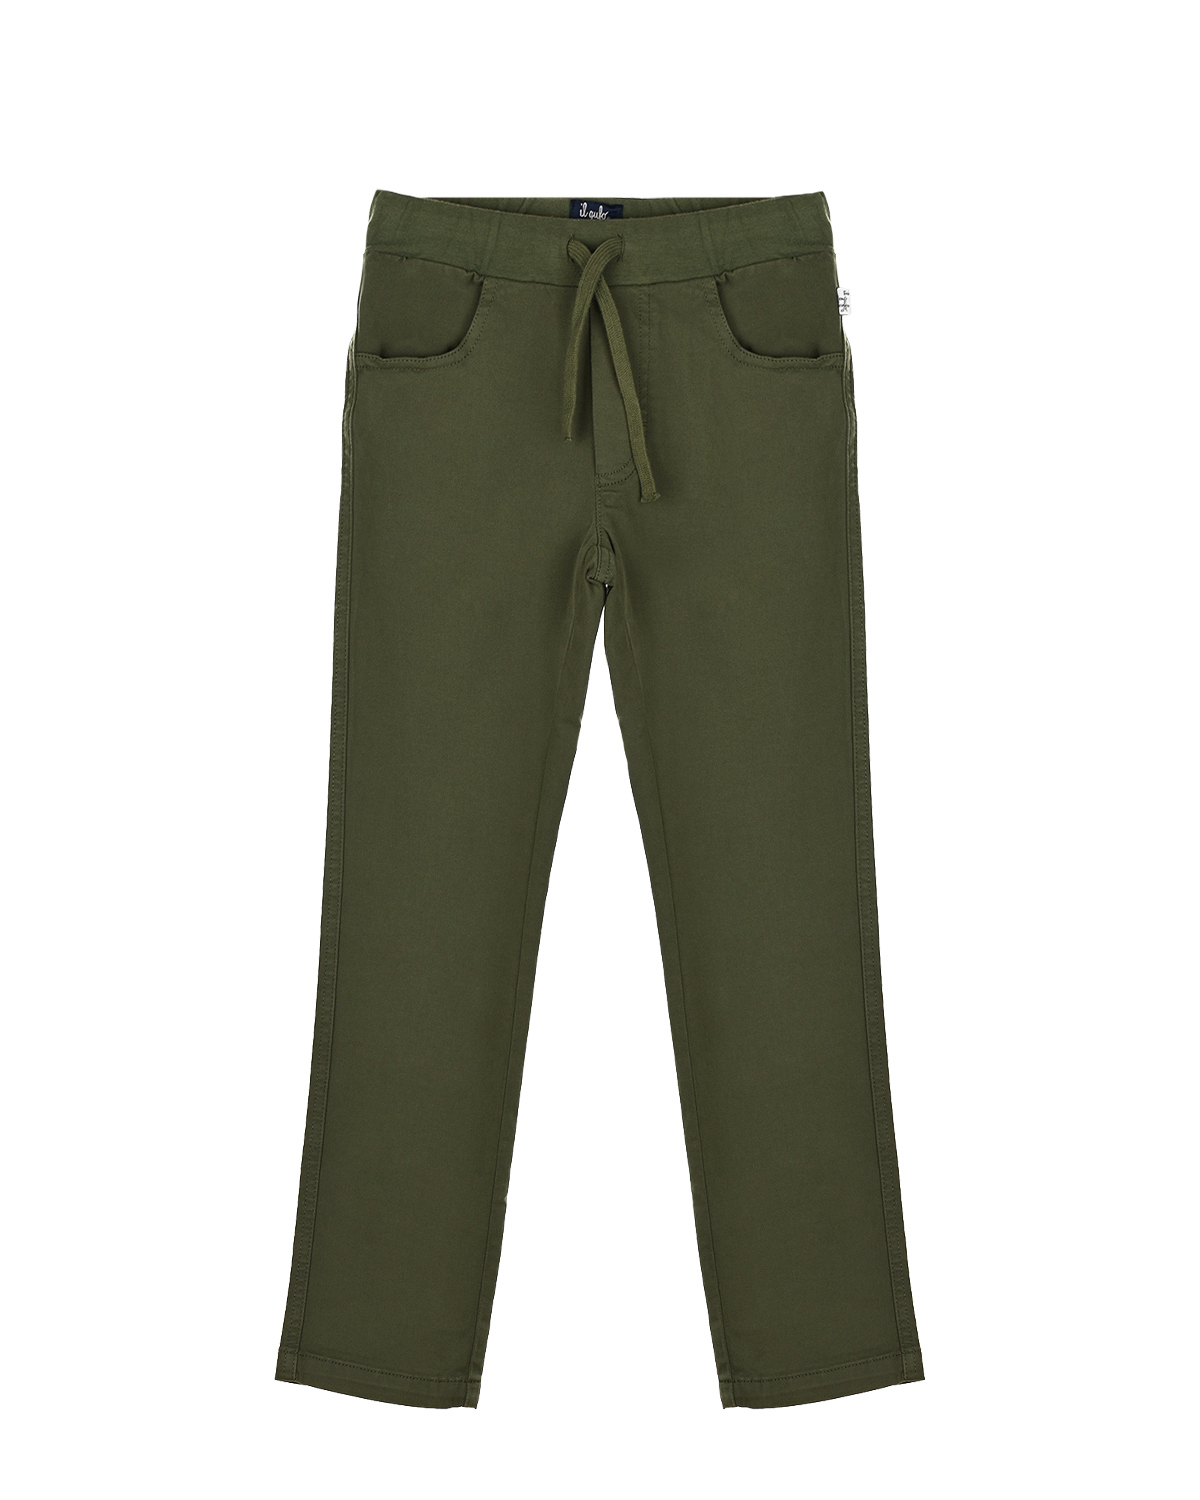 Зеленые брюки с поясом на кулиске IL Gufo детские, размер 116, цвет зеленый